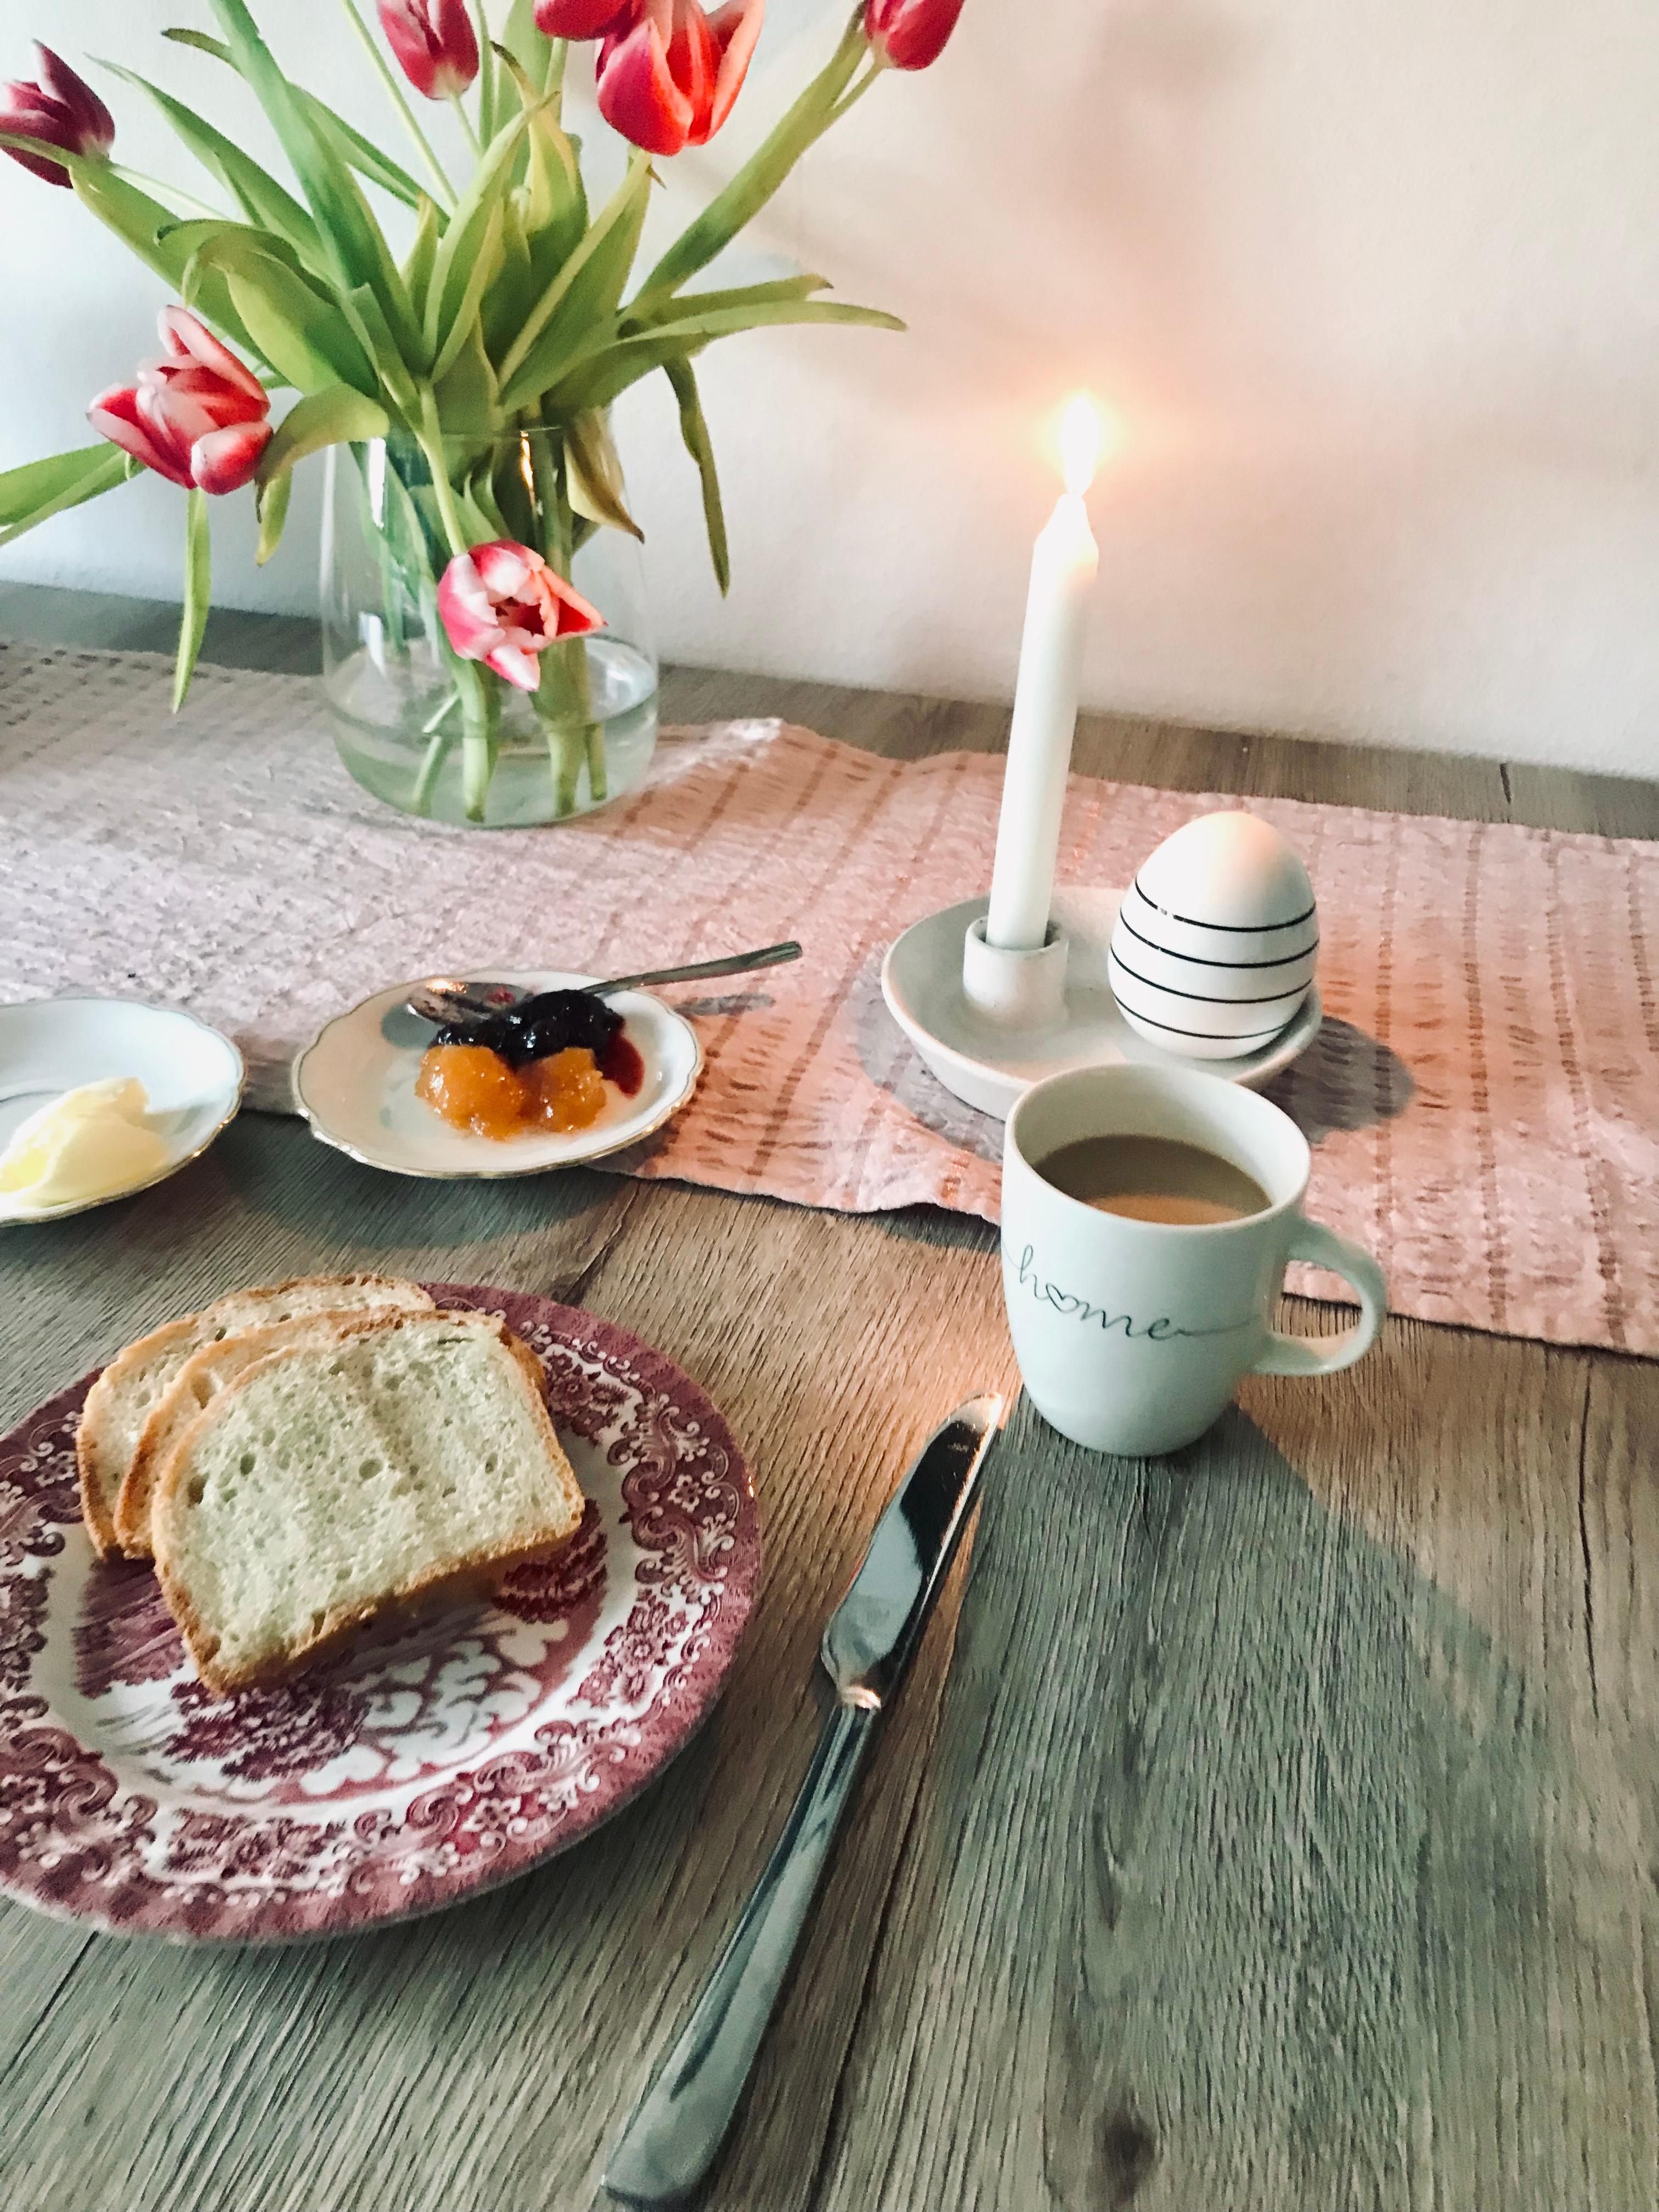 Marmelade auf’s Brot 🍞 
#samstag #breakfast #home #esstisch #tulpen #kerze #cafe 